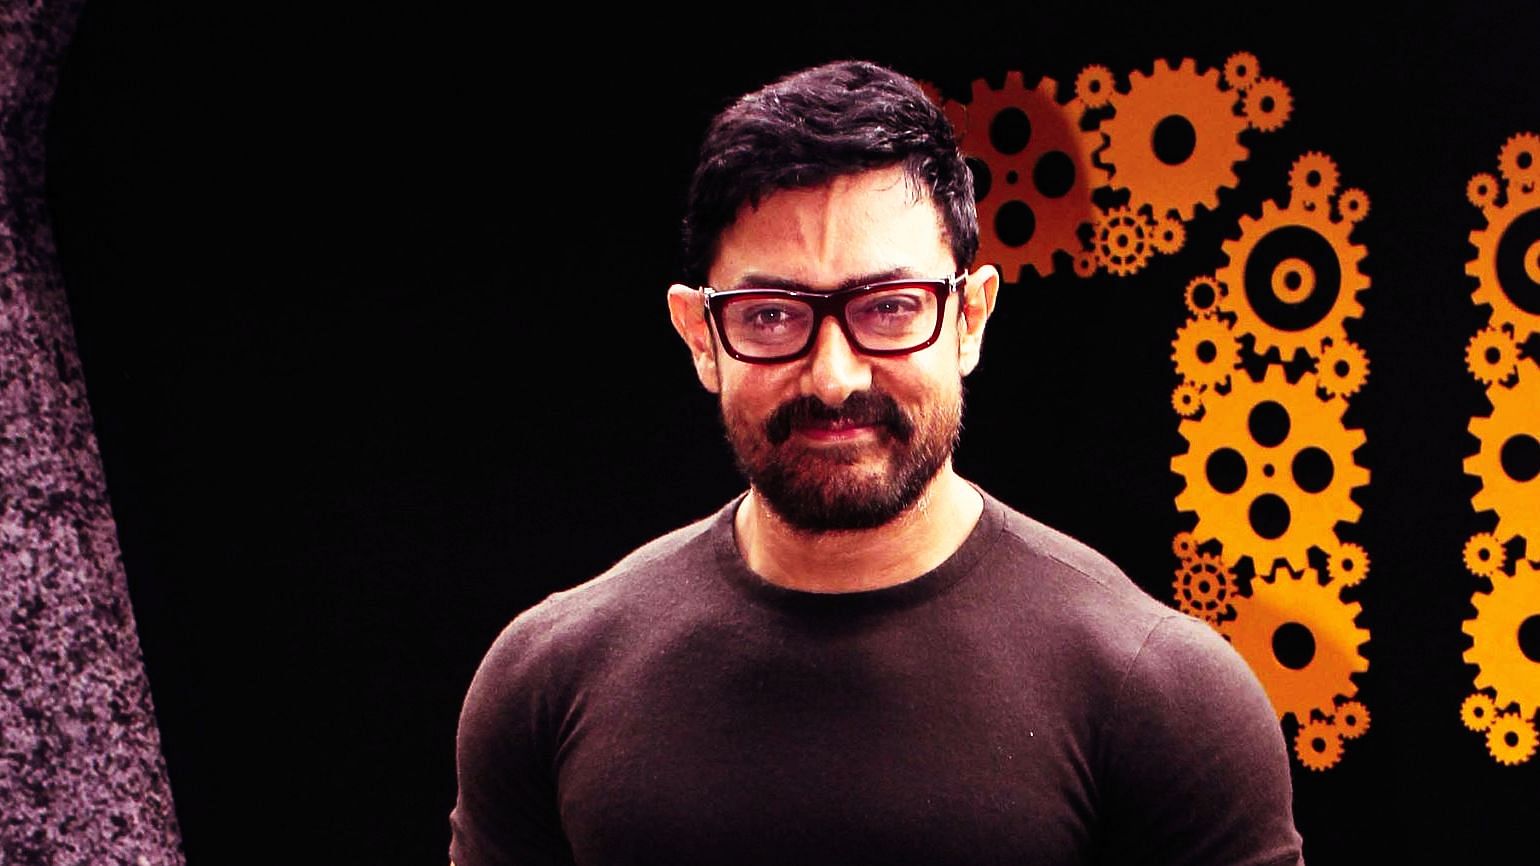 आमिर एक सुलझे हुए, आत्म-विश्लेषक व्यक्ति हैं